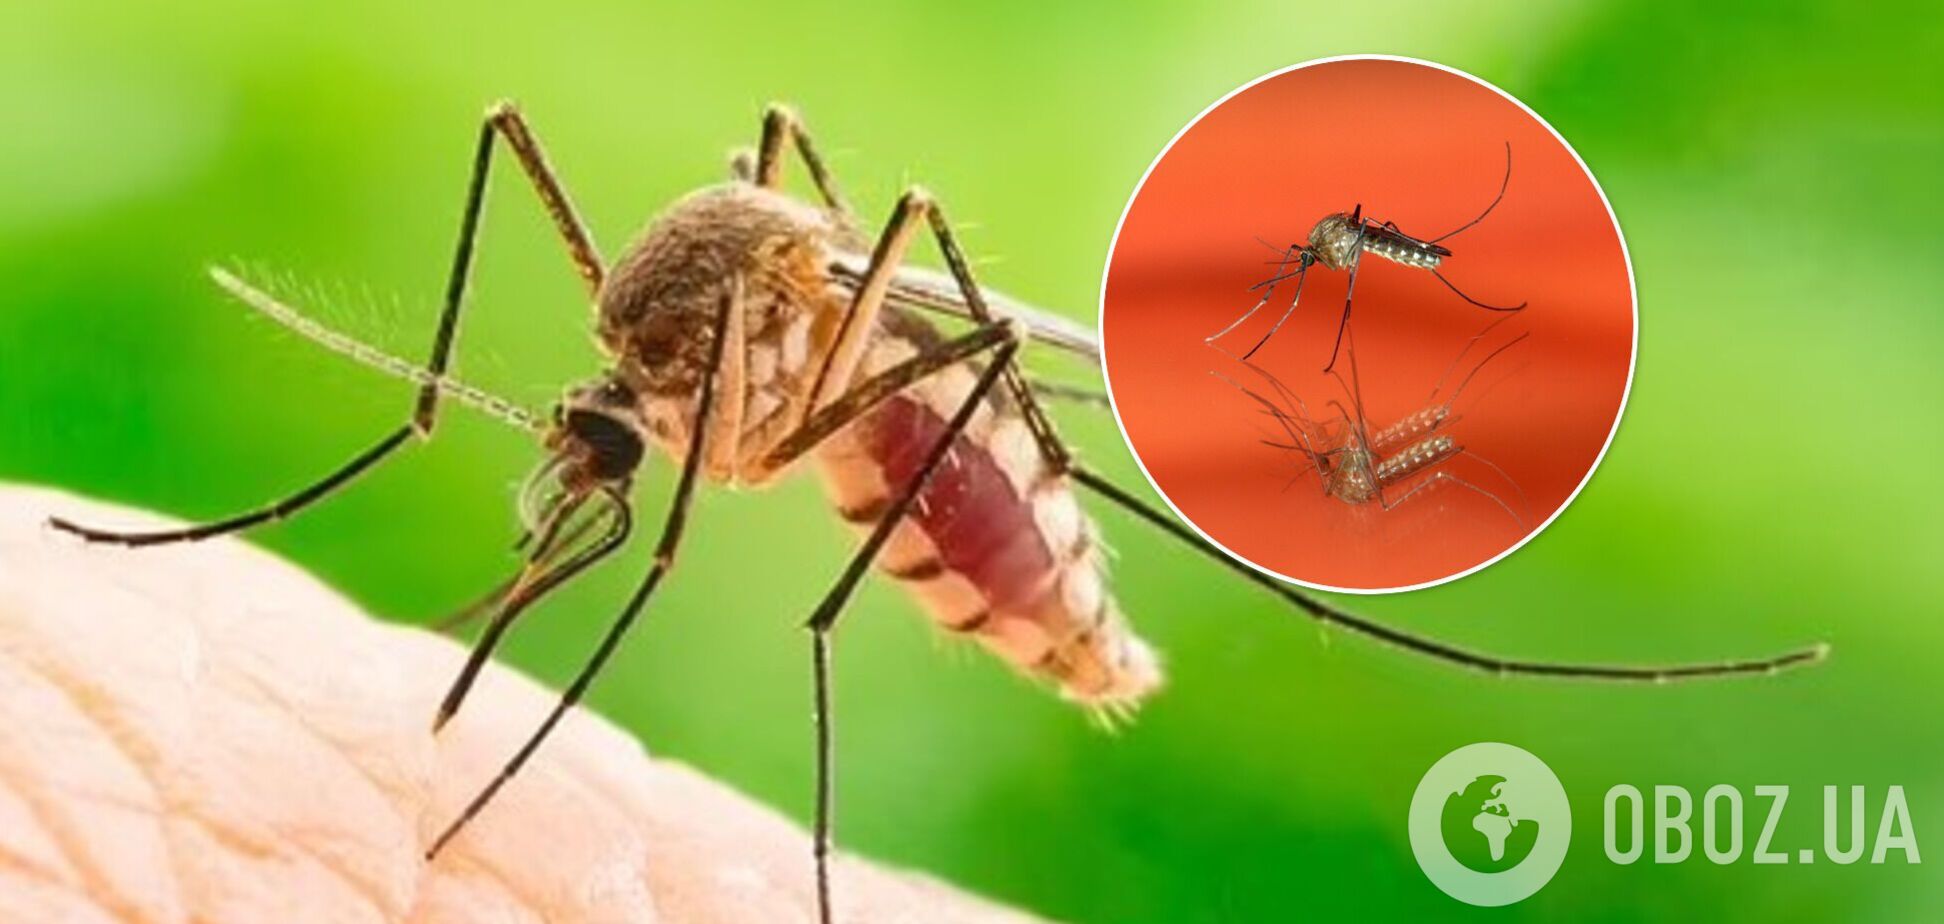 Комары 'любят' определенные цвета: исследование раскрыло какие